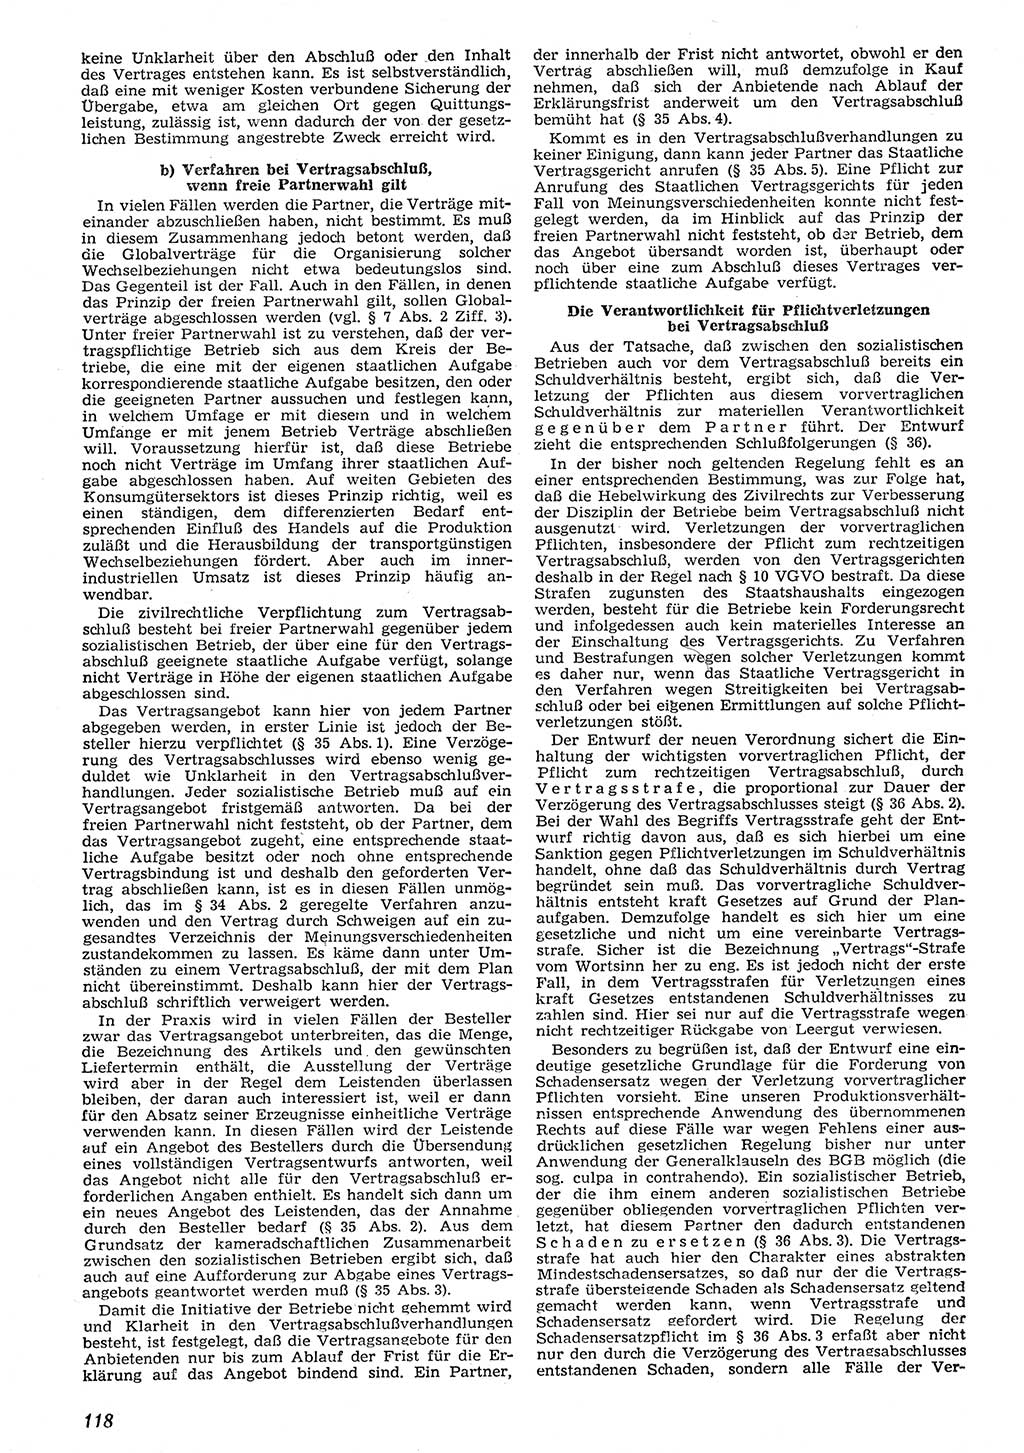 Neue Justiz (NJ), Zeitschrift für Recht und Rechtswissenschaft [Deutsche Demokratische Republik (DDR)], 10. Jahrgang 1956, Seite 118 (NJ DDR 1956, S. 118)